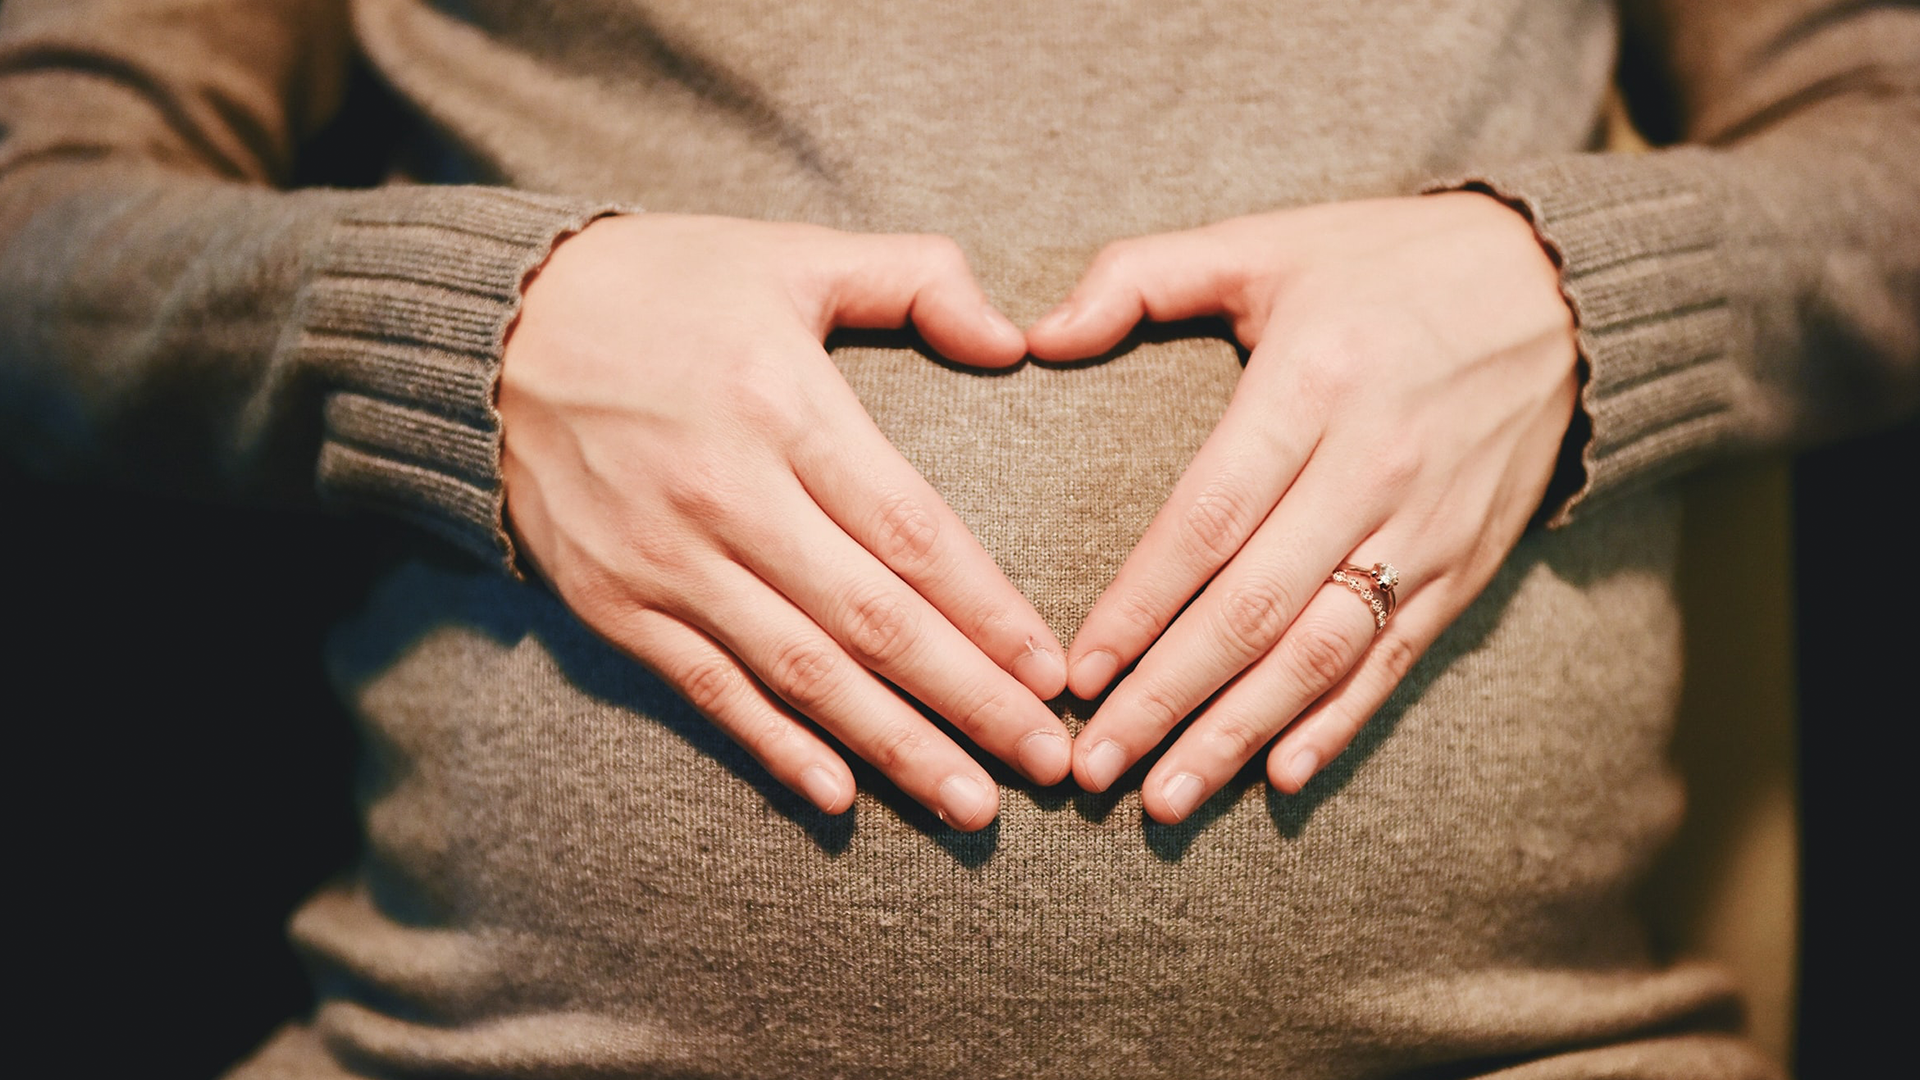 Diététicienne spécialisée grossesse : quand pourquoi consulter ?